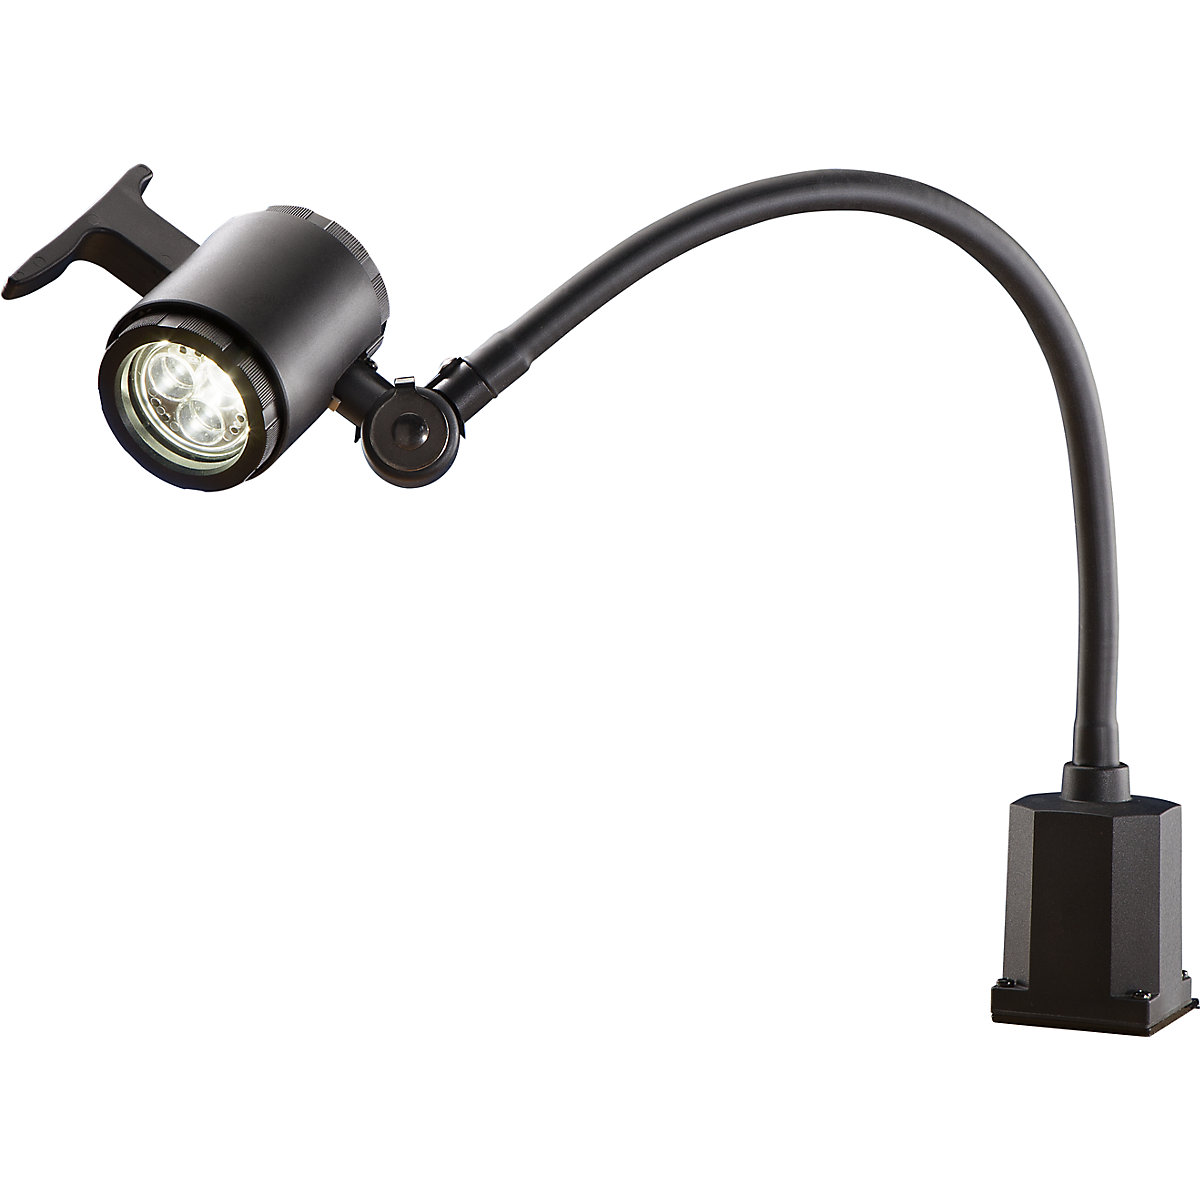 Lampă LED pentru utilaje, cu braț flexibil, IP65